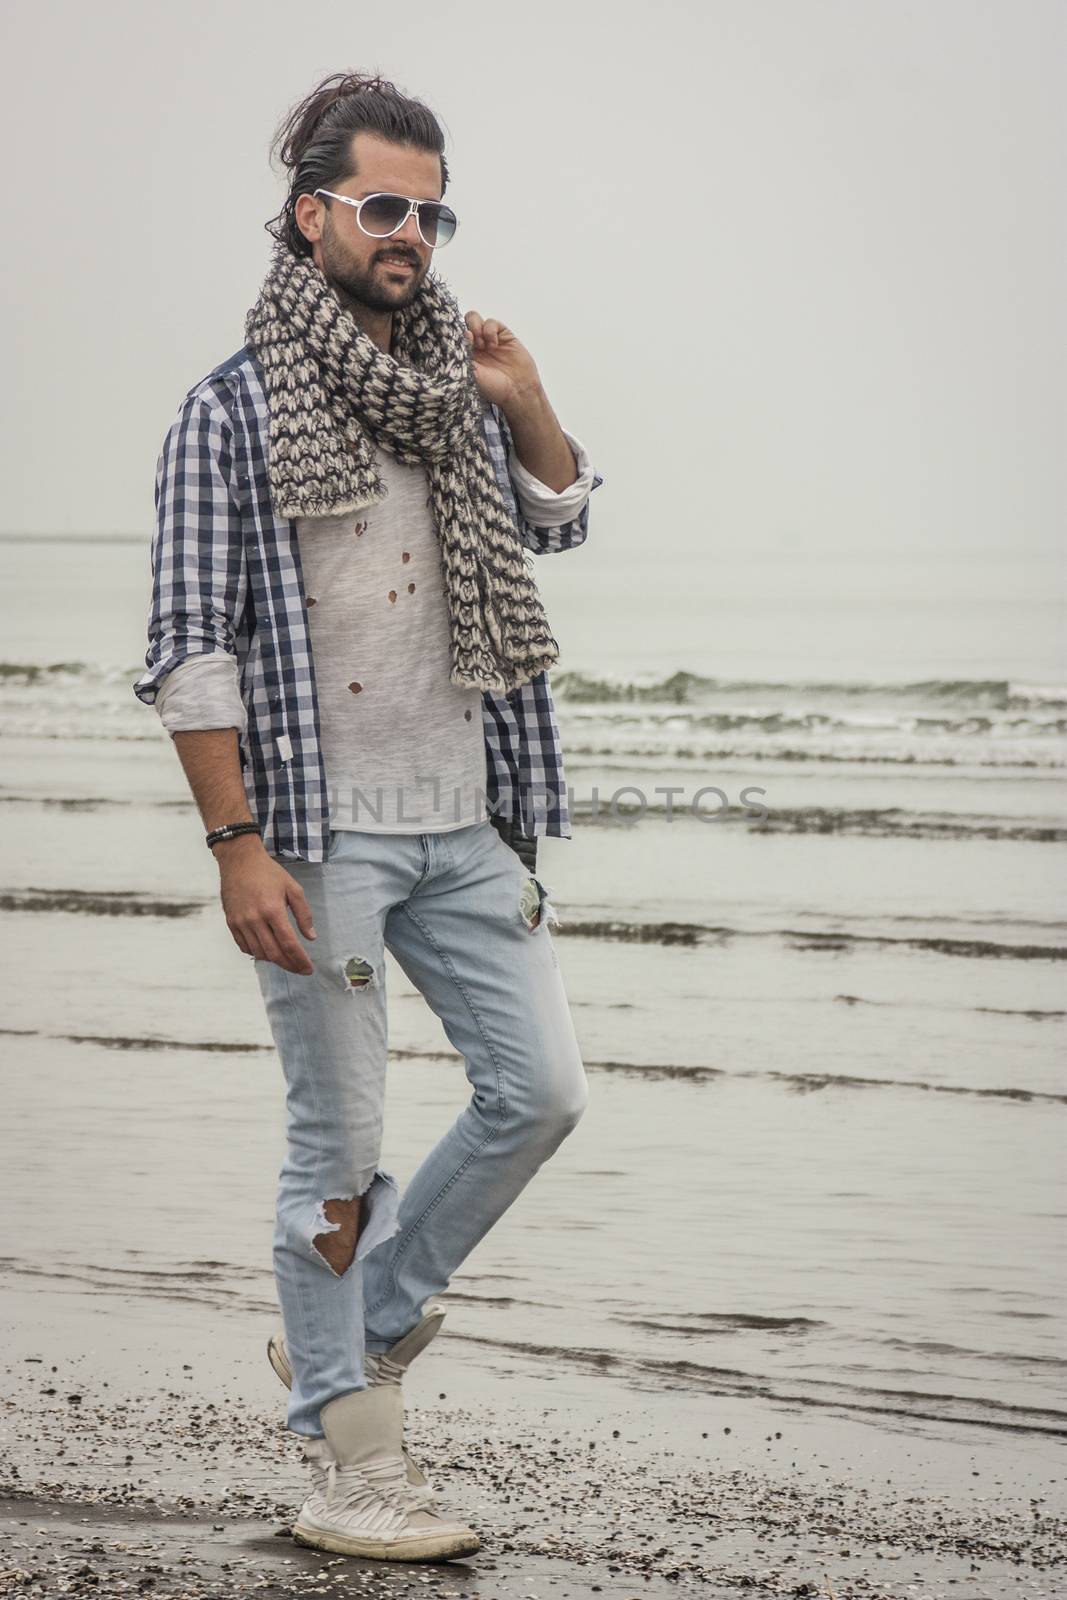 Fashion boy at beach by pippocarlot